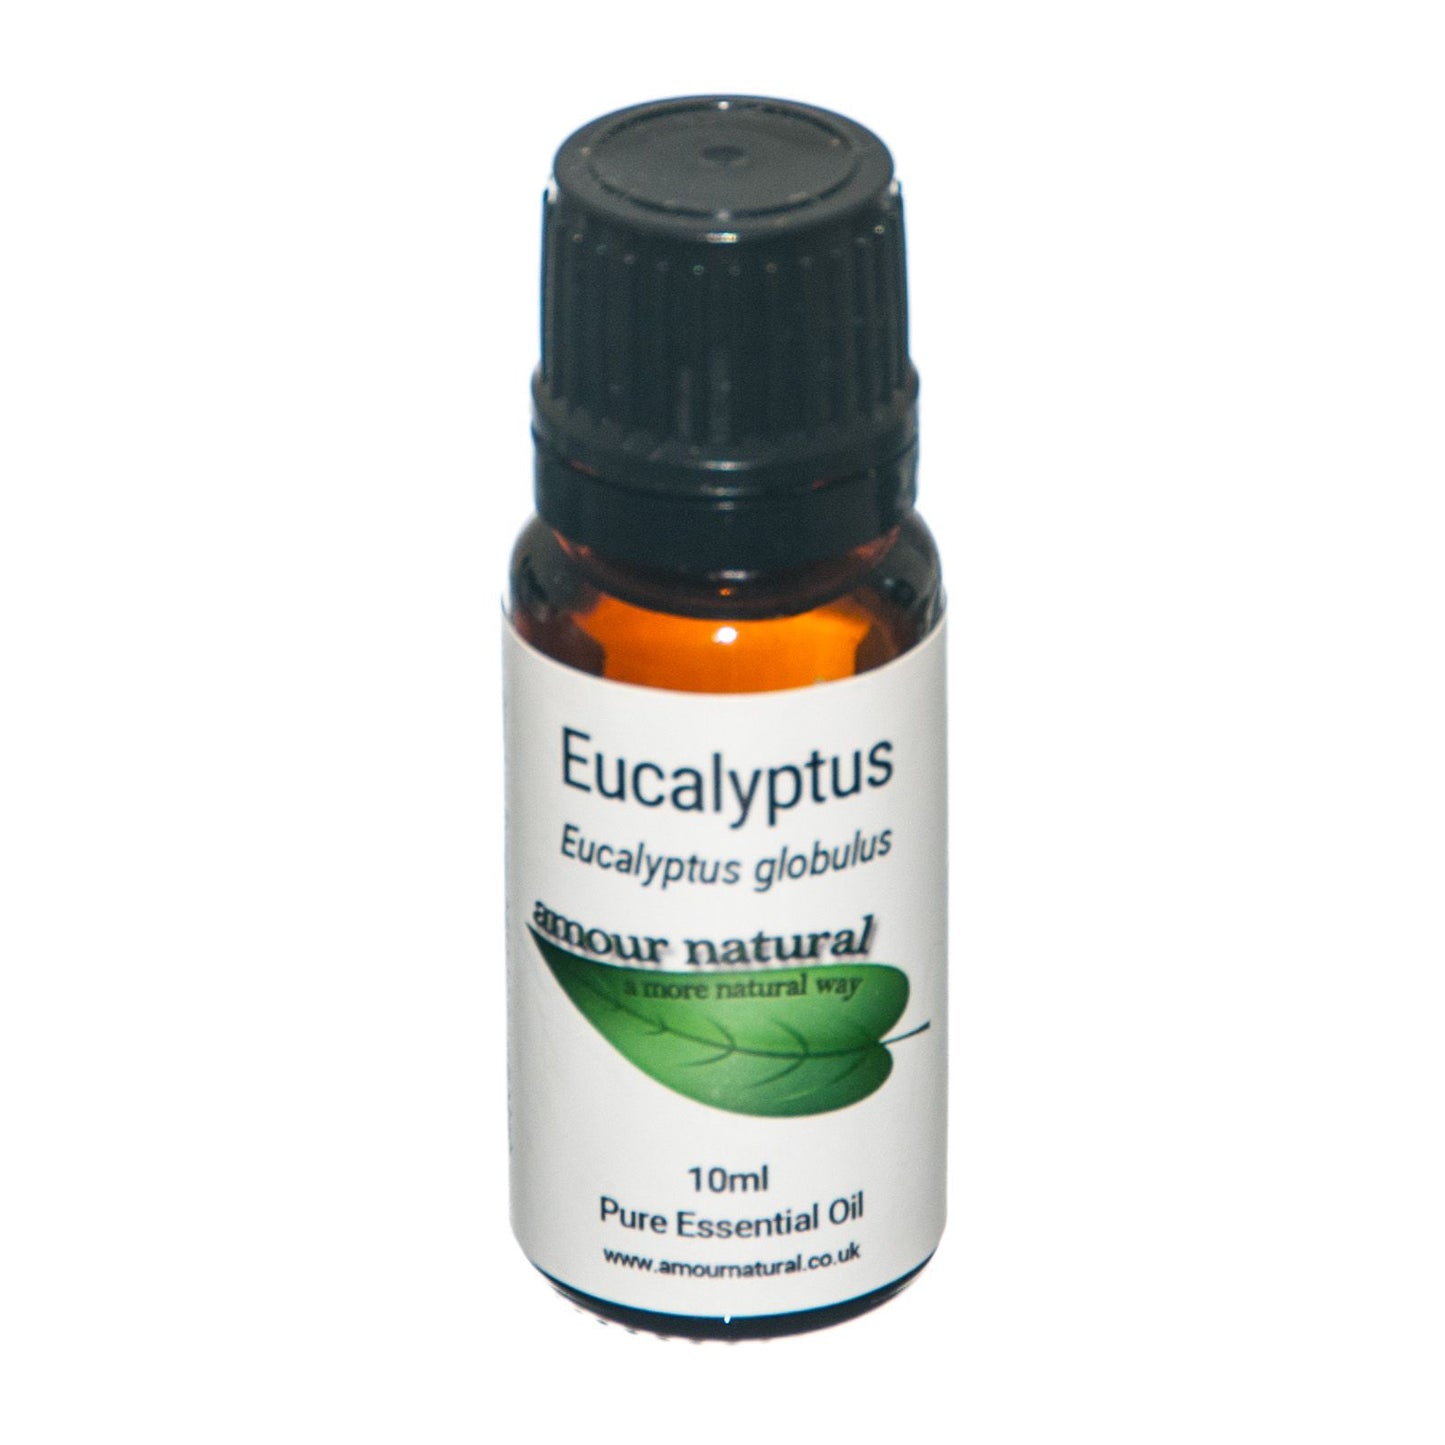 EUCALYPTUS ESSENTIAL OIL (Eucalyptus globulus)